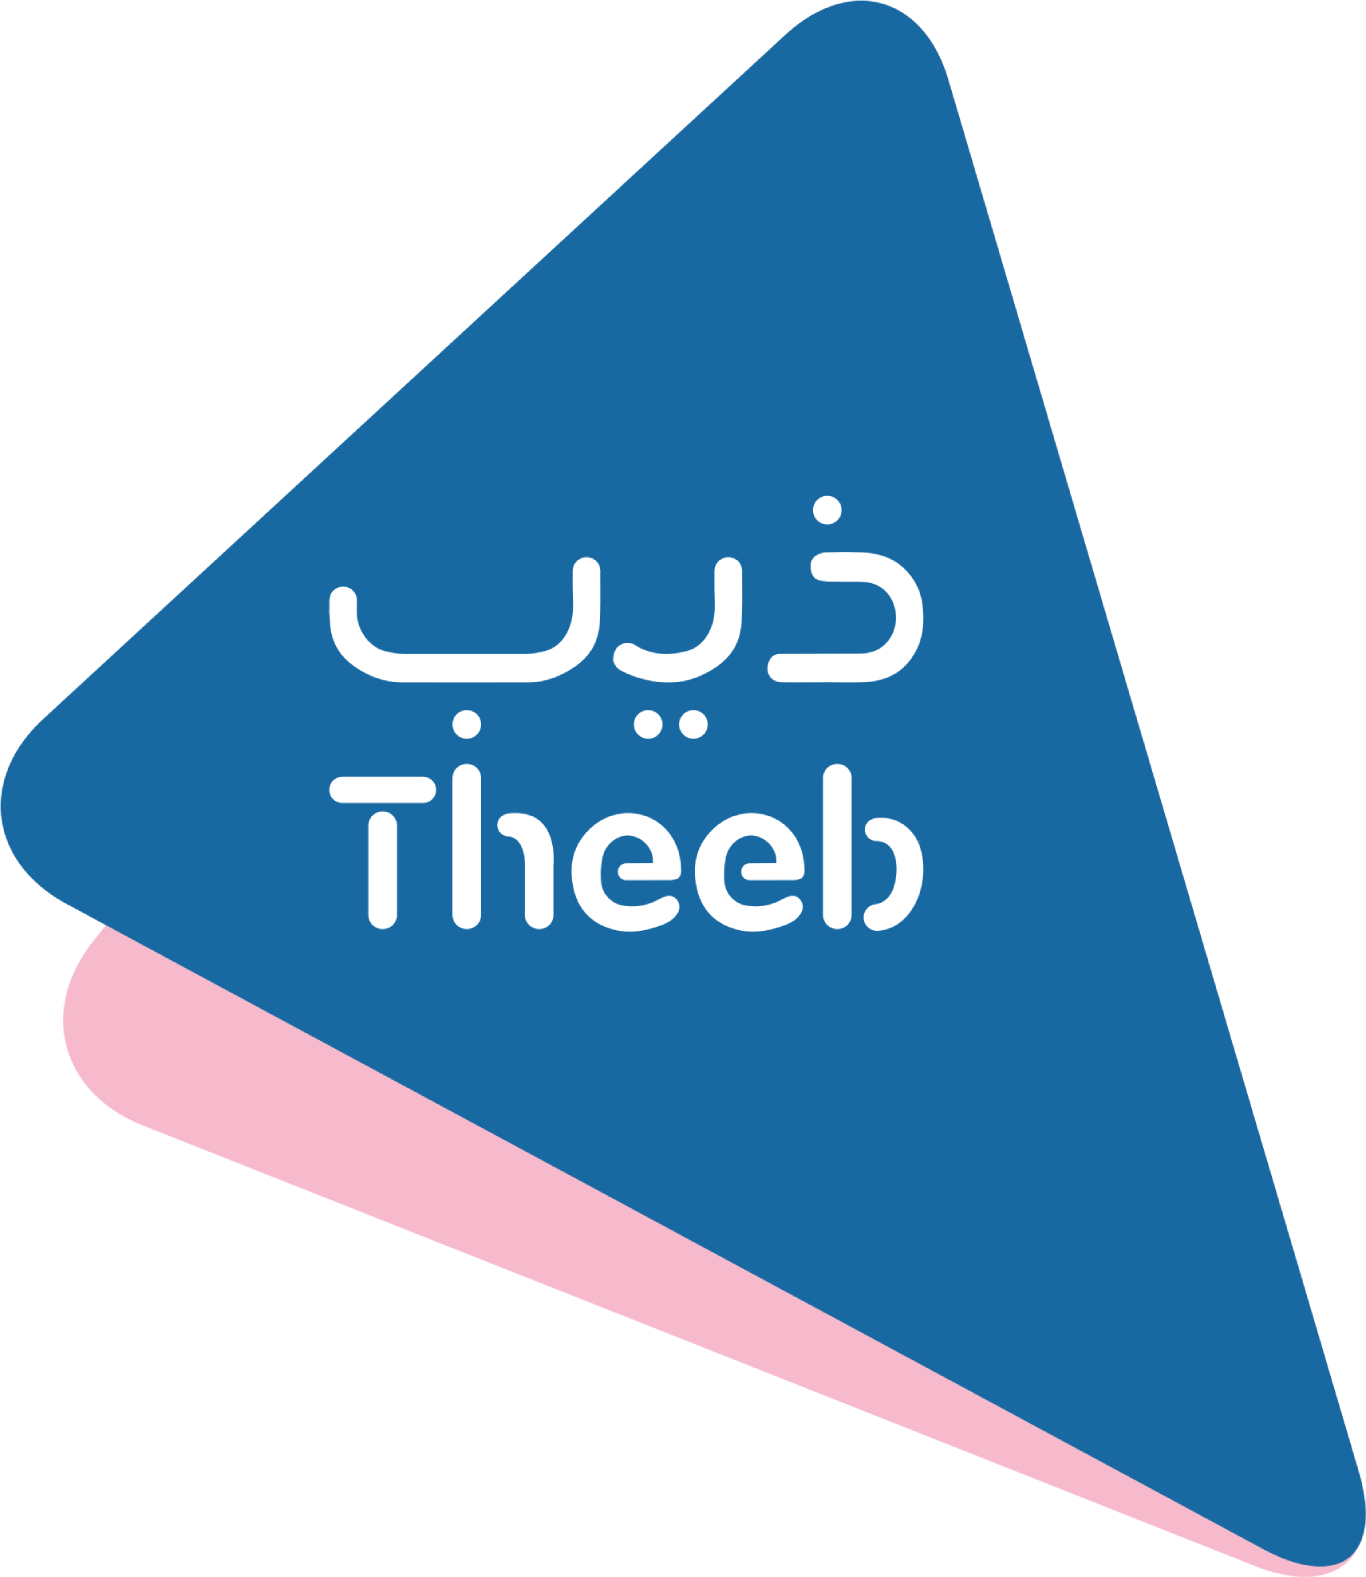 Theeb Rent A Car Company logo (PNG transparent)